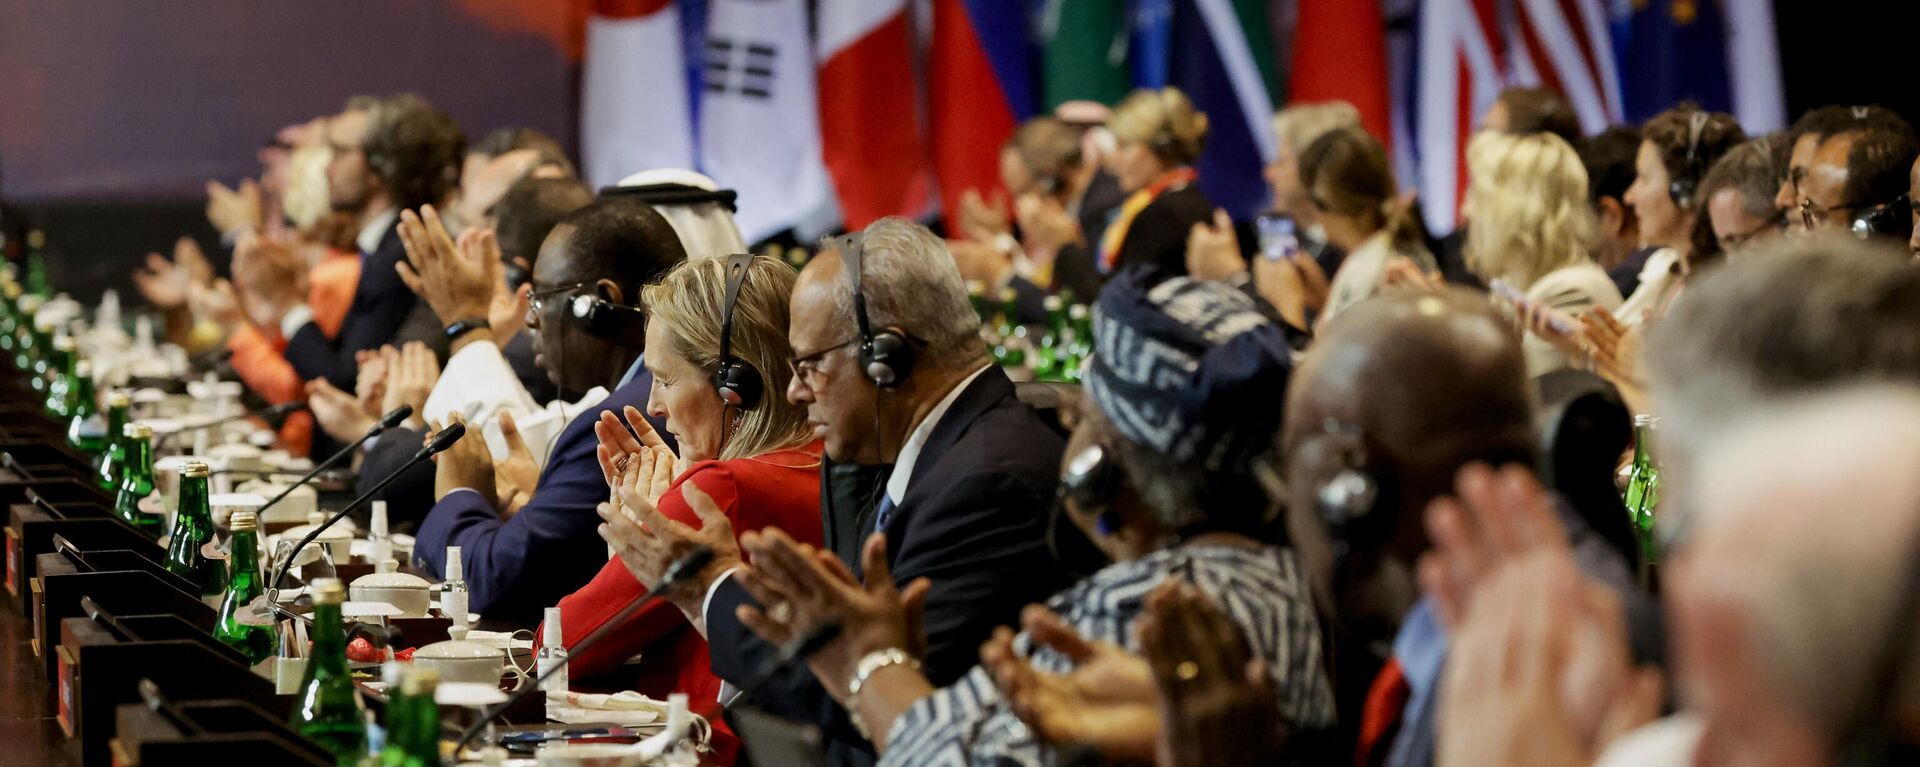 المندوبون يصفقون خلال حفل التسليم في قمة قادة مجموعة العشرين، في نوسا دوا، بالي، إندونيسيا 16 نوفمبر 2022. - سبوتنيك عربي, 1920, 24.11.2022